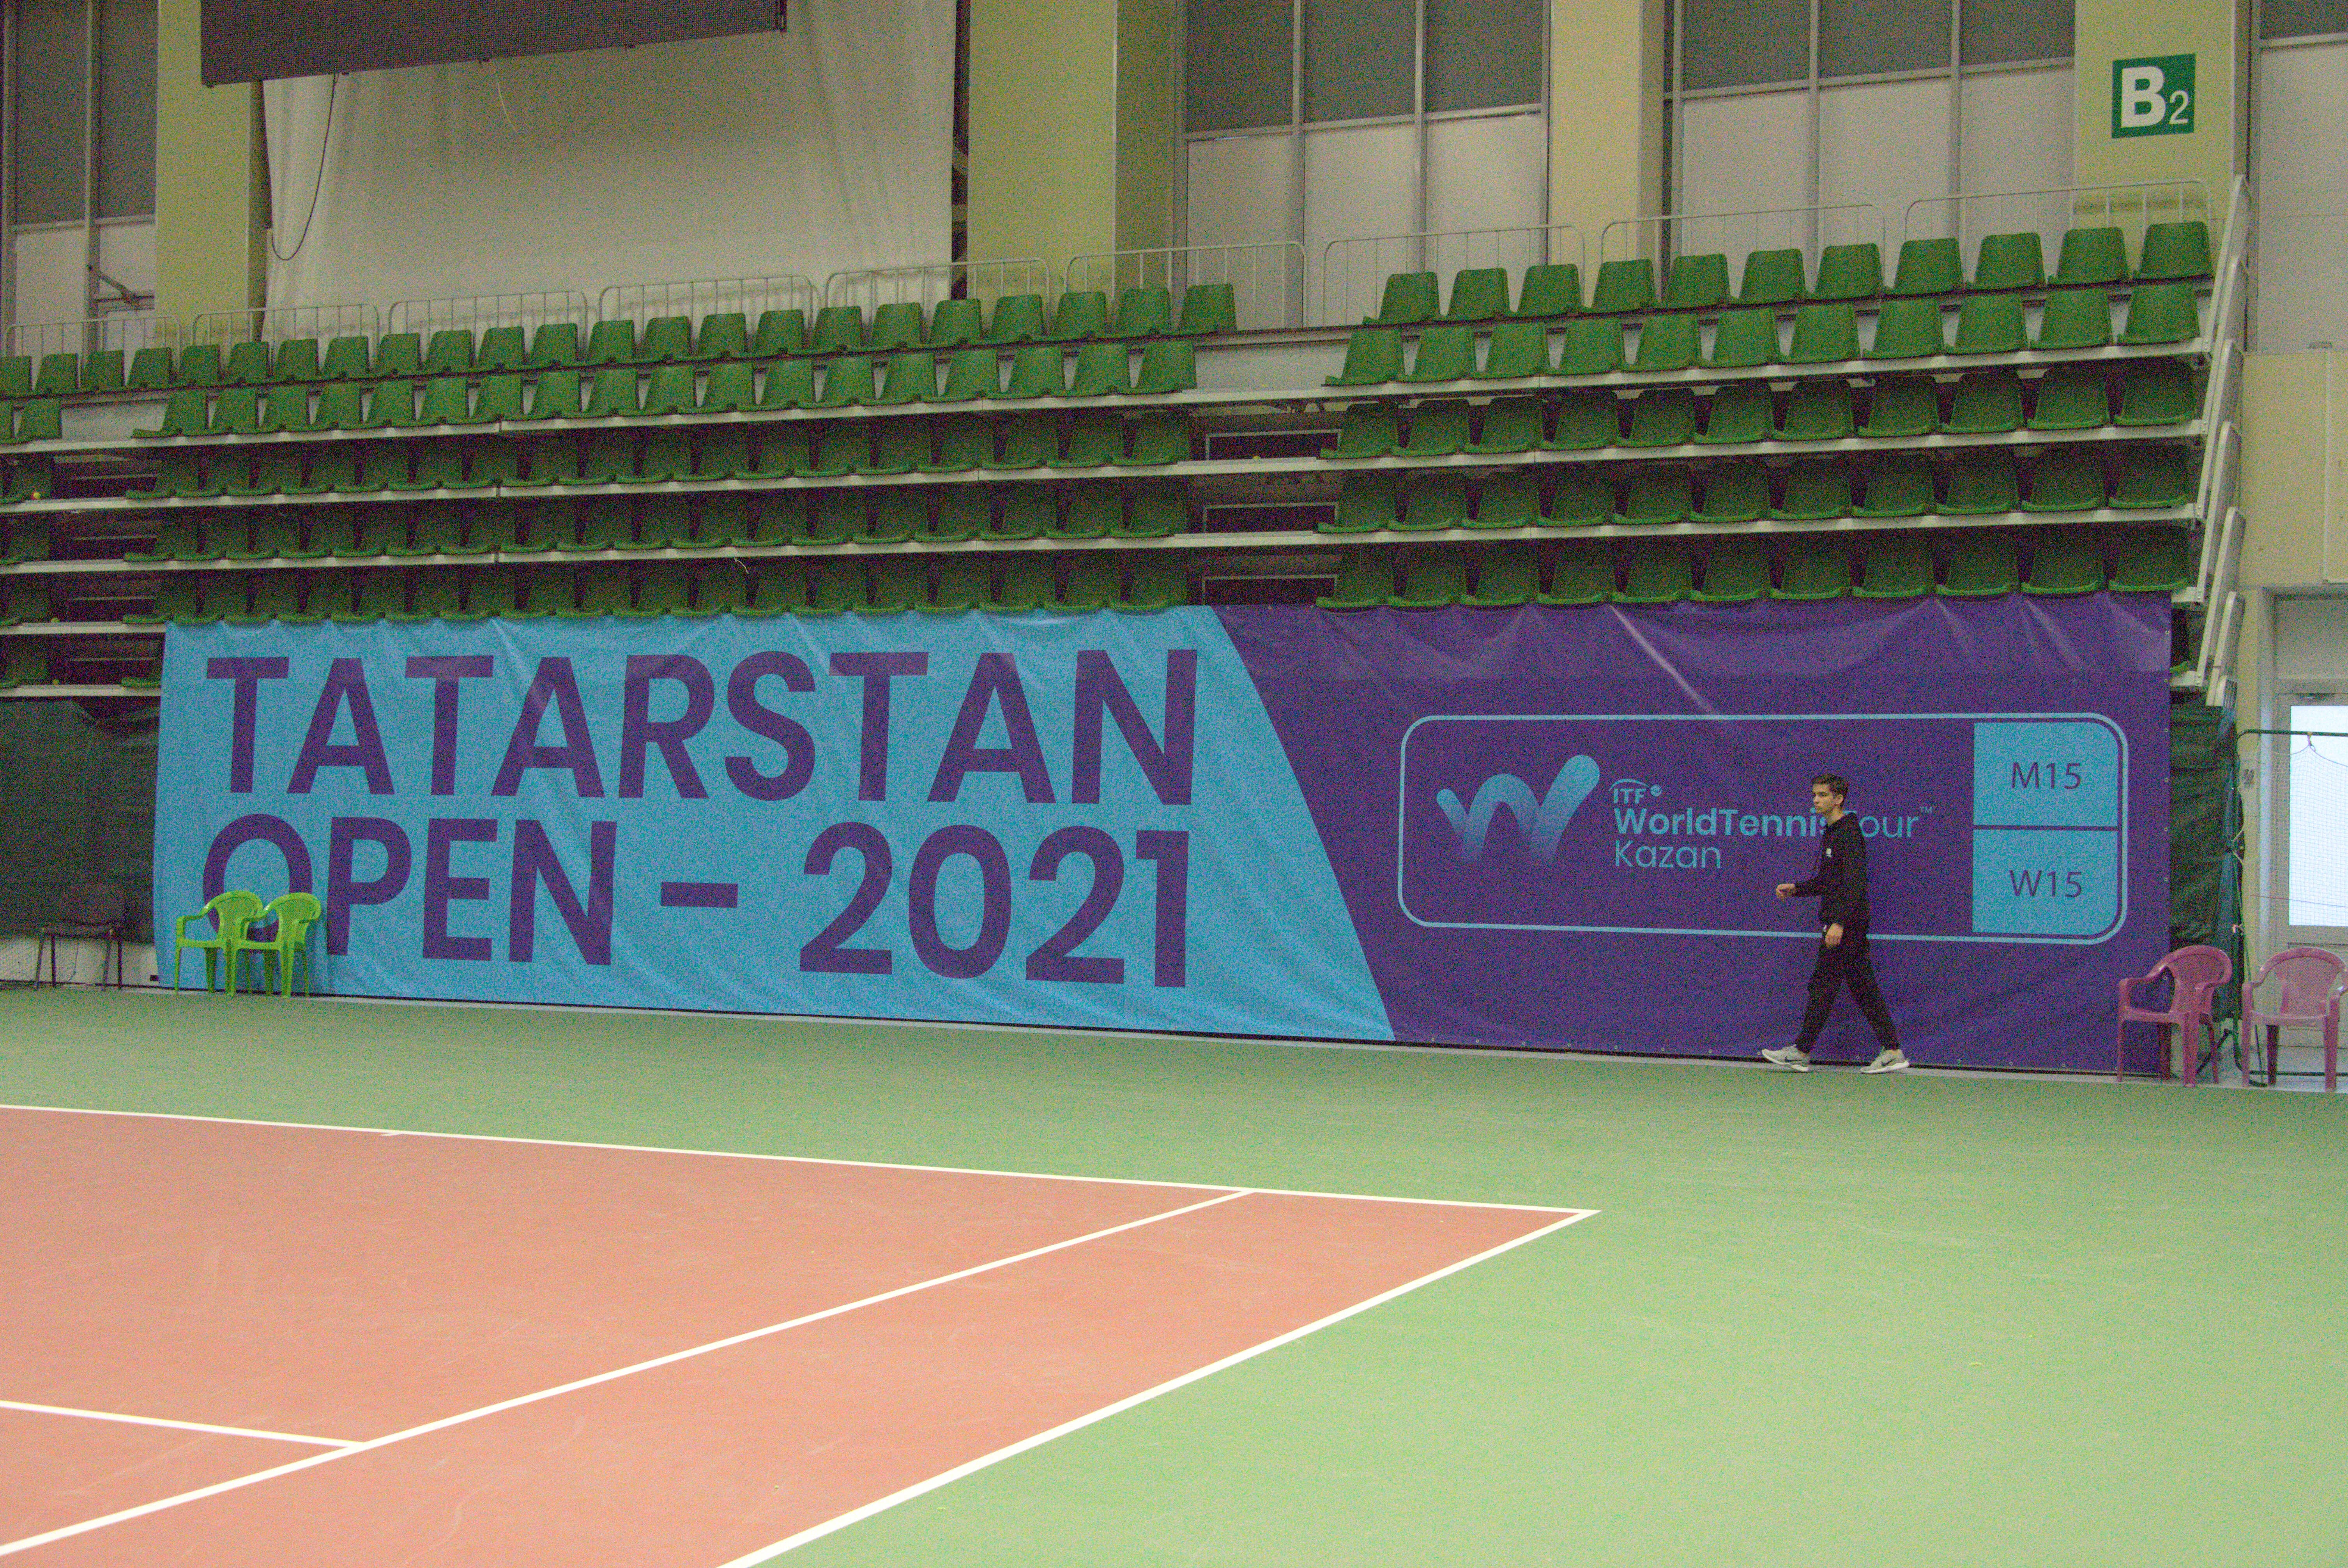 Завтра на кортах академии состоятся финальные матчи парного разряда Tatarstan open 2021